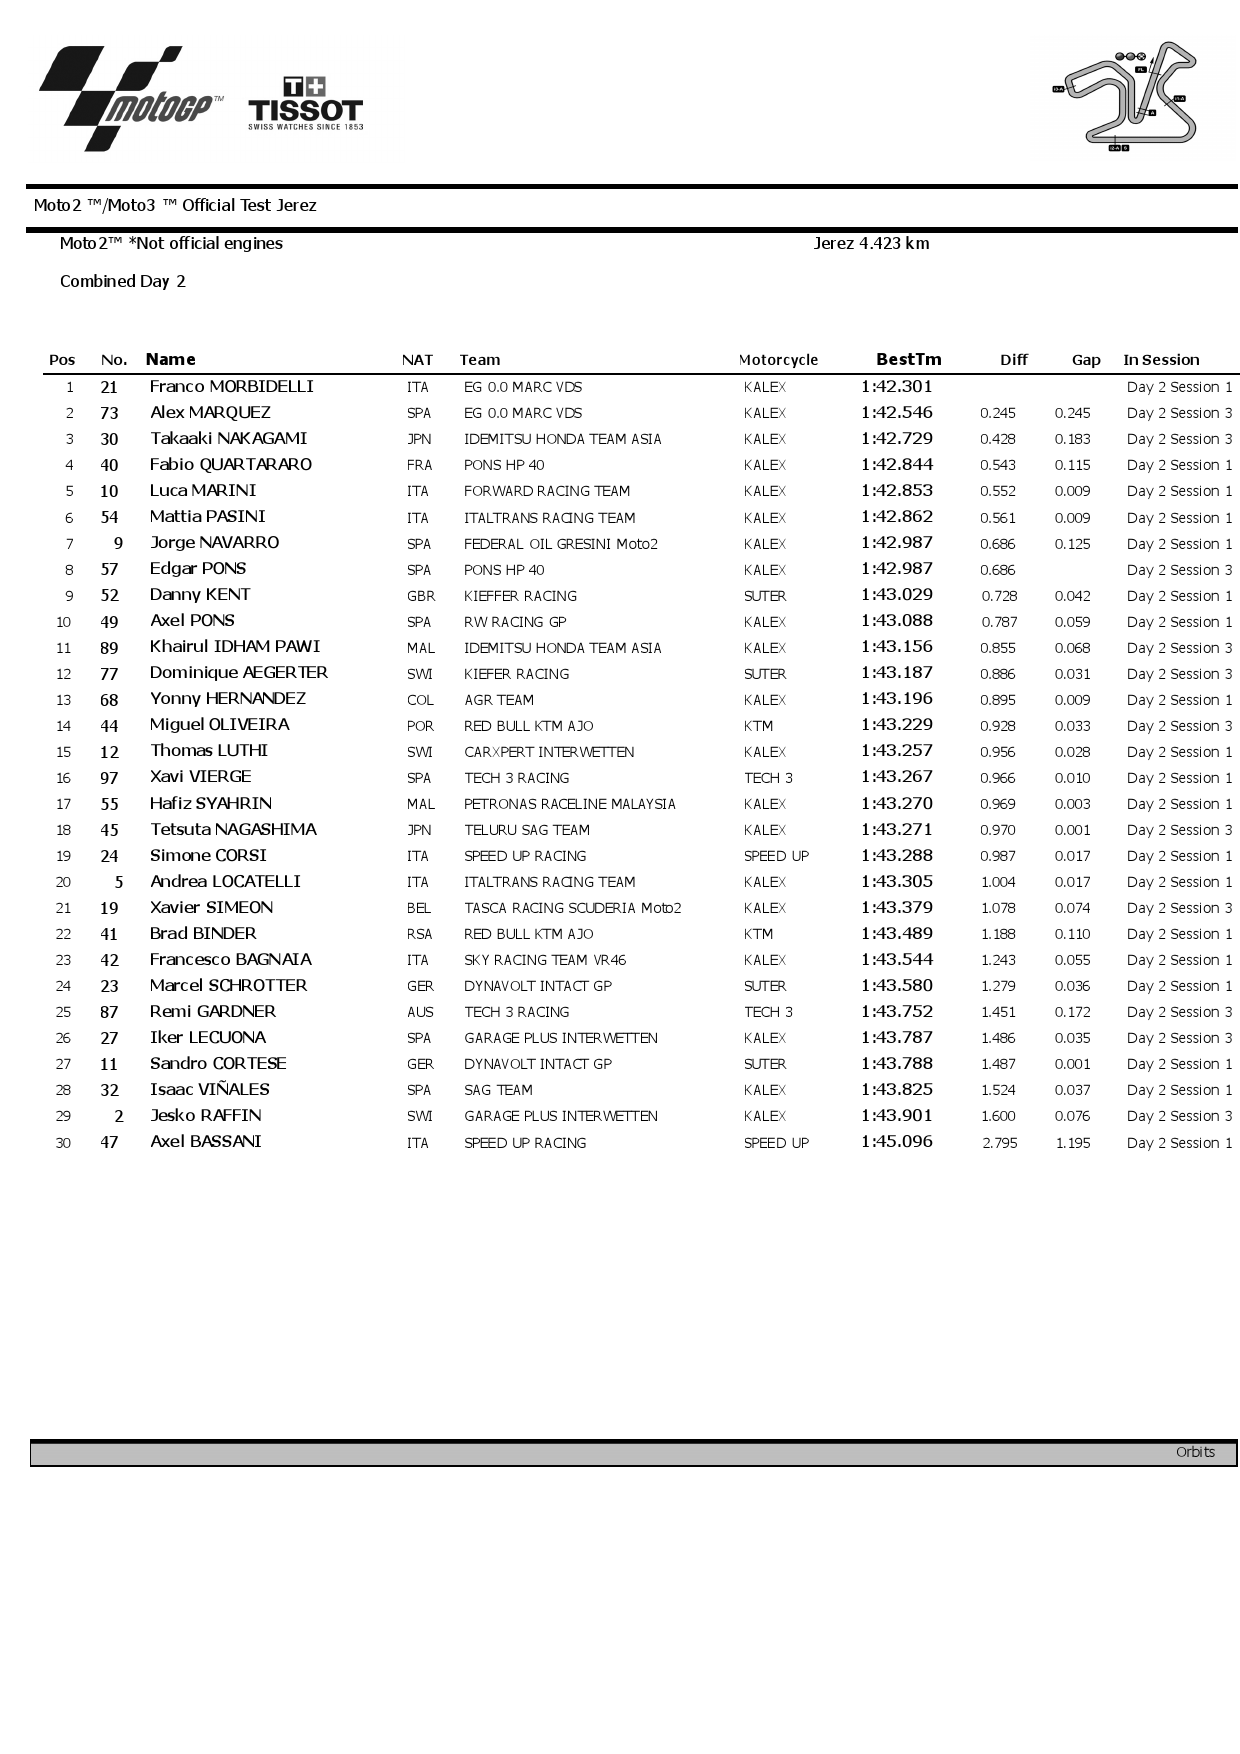 Результаты 2 дня тестов IRTA Moto2 в Херсе